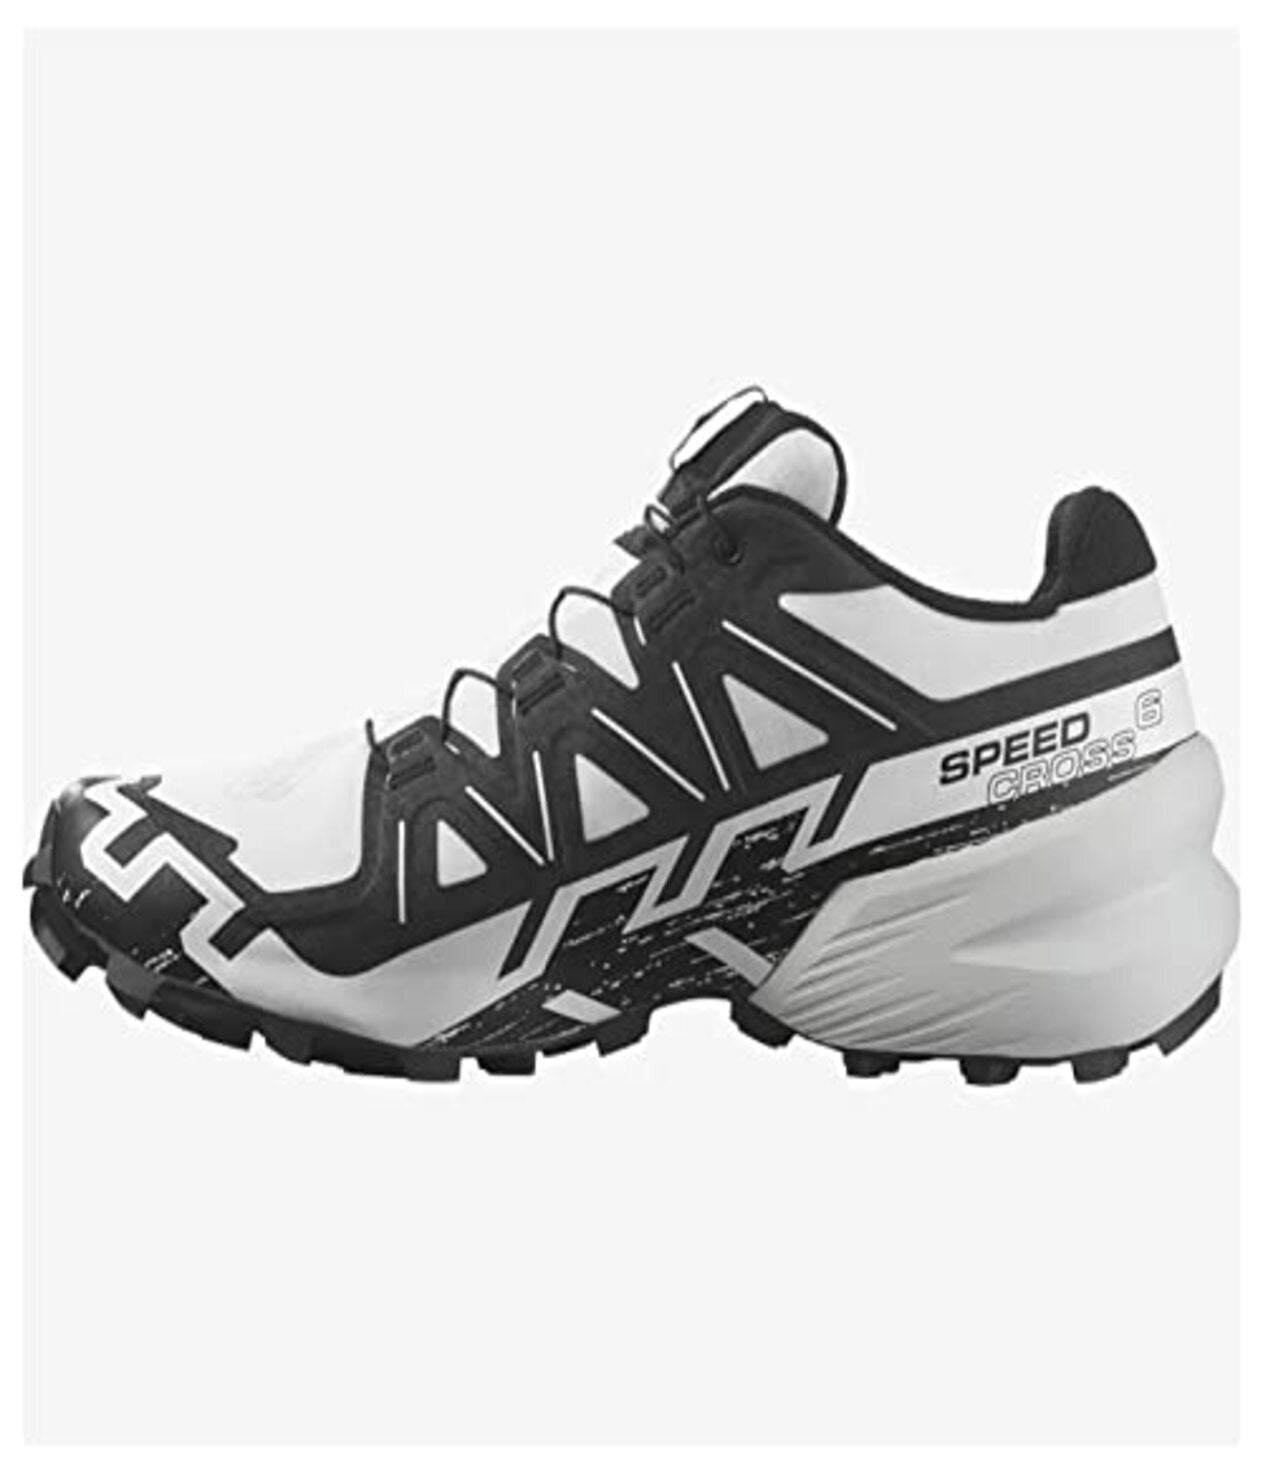 Salomon Speedcross 5 Trail Running Shoes White/Red Men